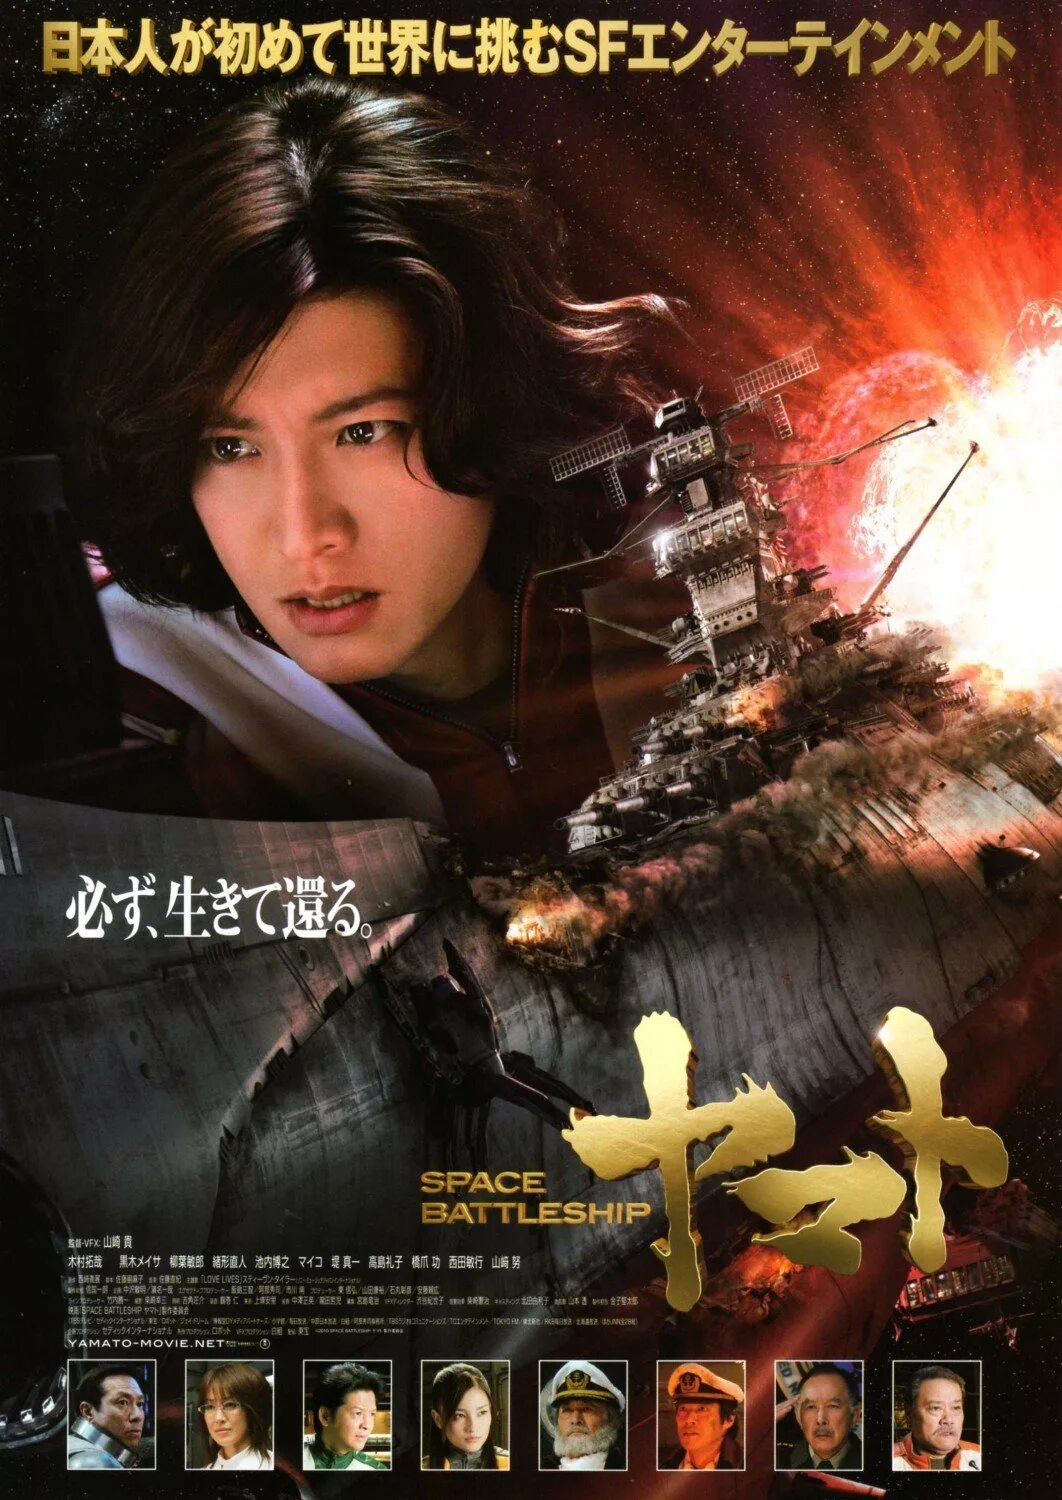 Space 2010. Космическая Одиссея 2199 космический линкор Ямато. 2199: Космическая Одиссея (2010). Space Battleship Yamato poster.